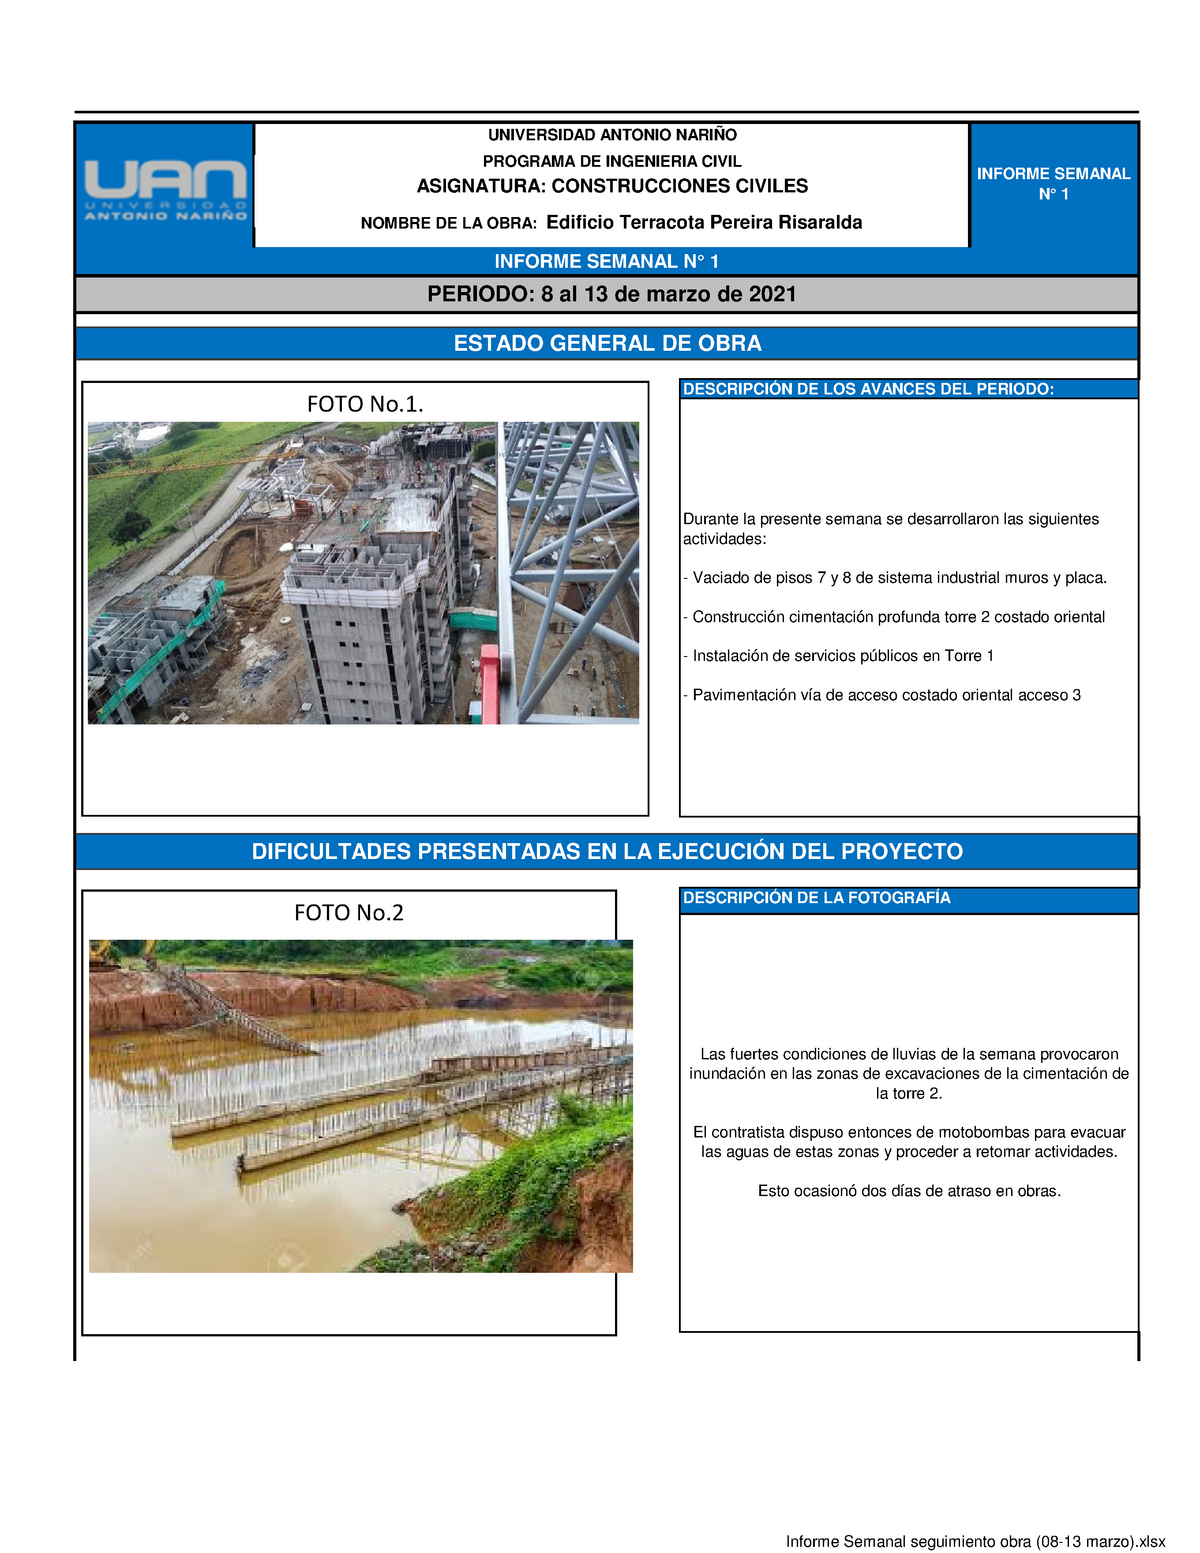 Ejemplo Informe Semanal seguimiento obra (08-13 marzo) - Las fuertes  condiciones de lluvias de la - Studocu